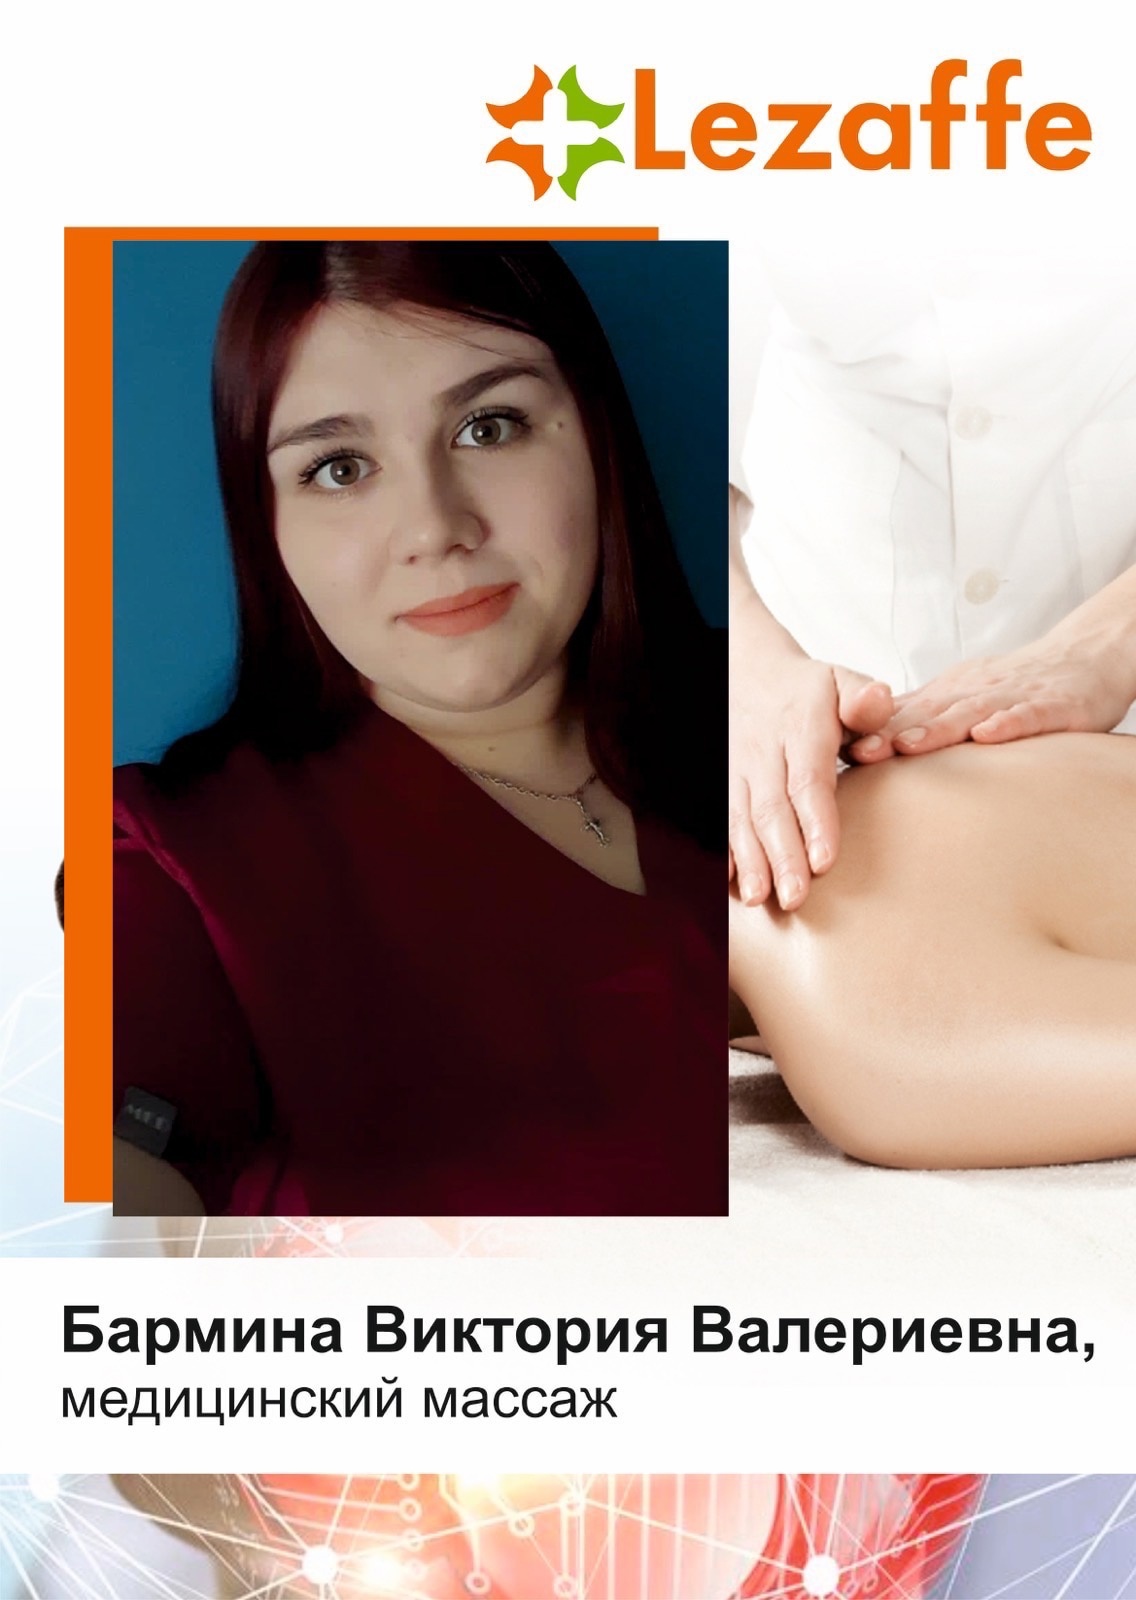 Бармина Виктория Валериевна - медицинский массаж г. Нягань